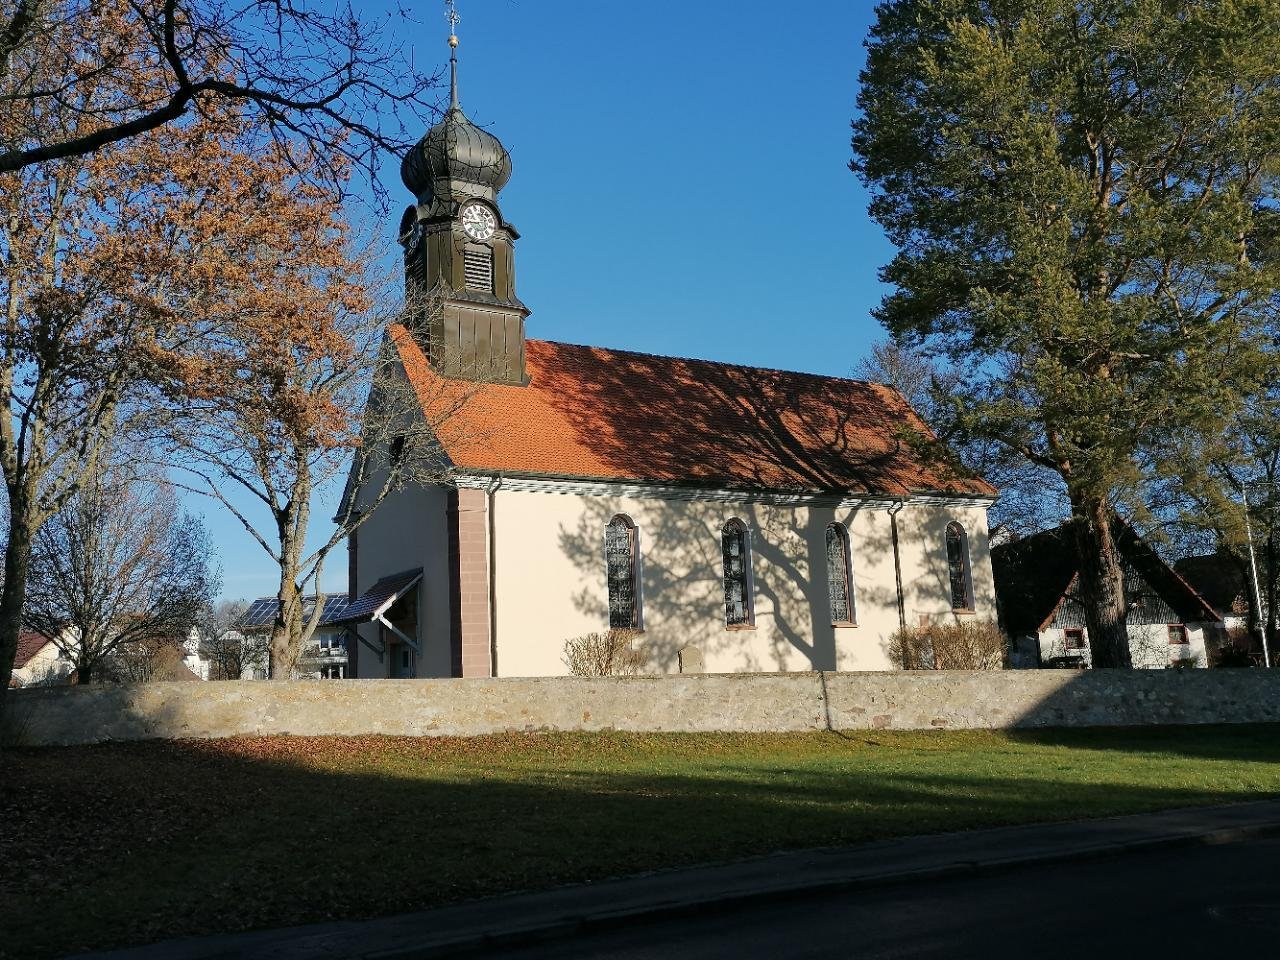 Kirche in Landauf, LandApp BW App spotted by Harry Schneckenburger on 18.12.2020